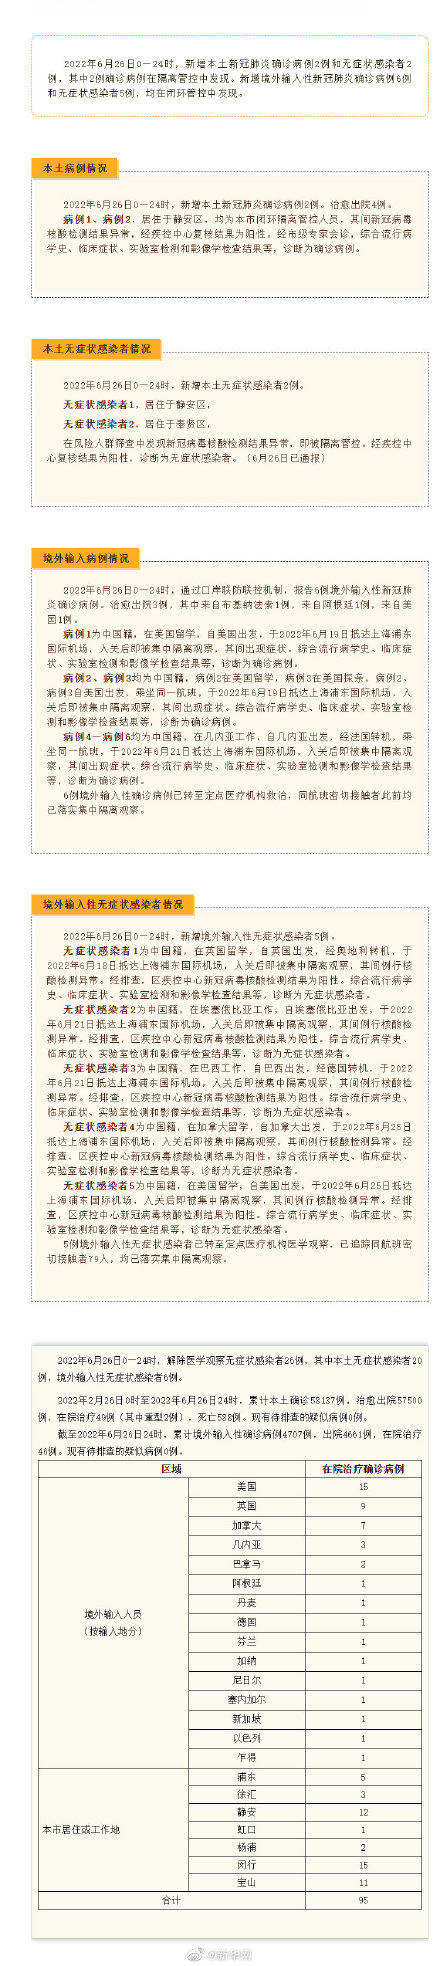 6月26日上海增本土确诊2例无症状2例